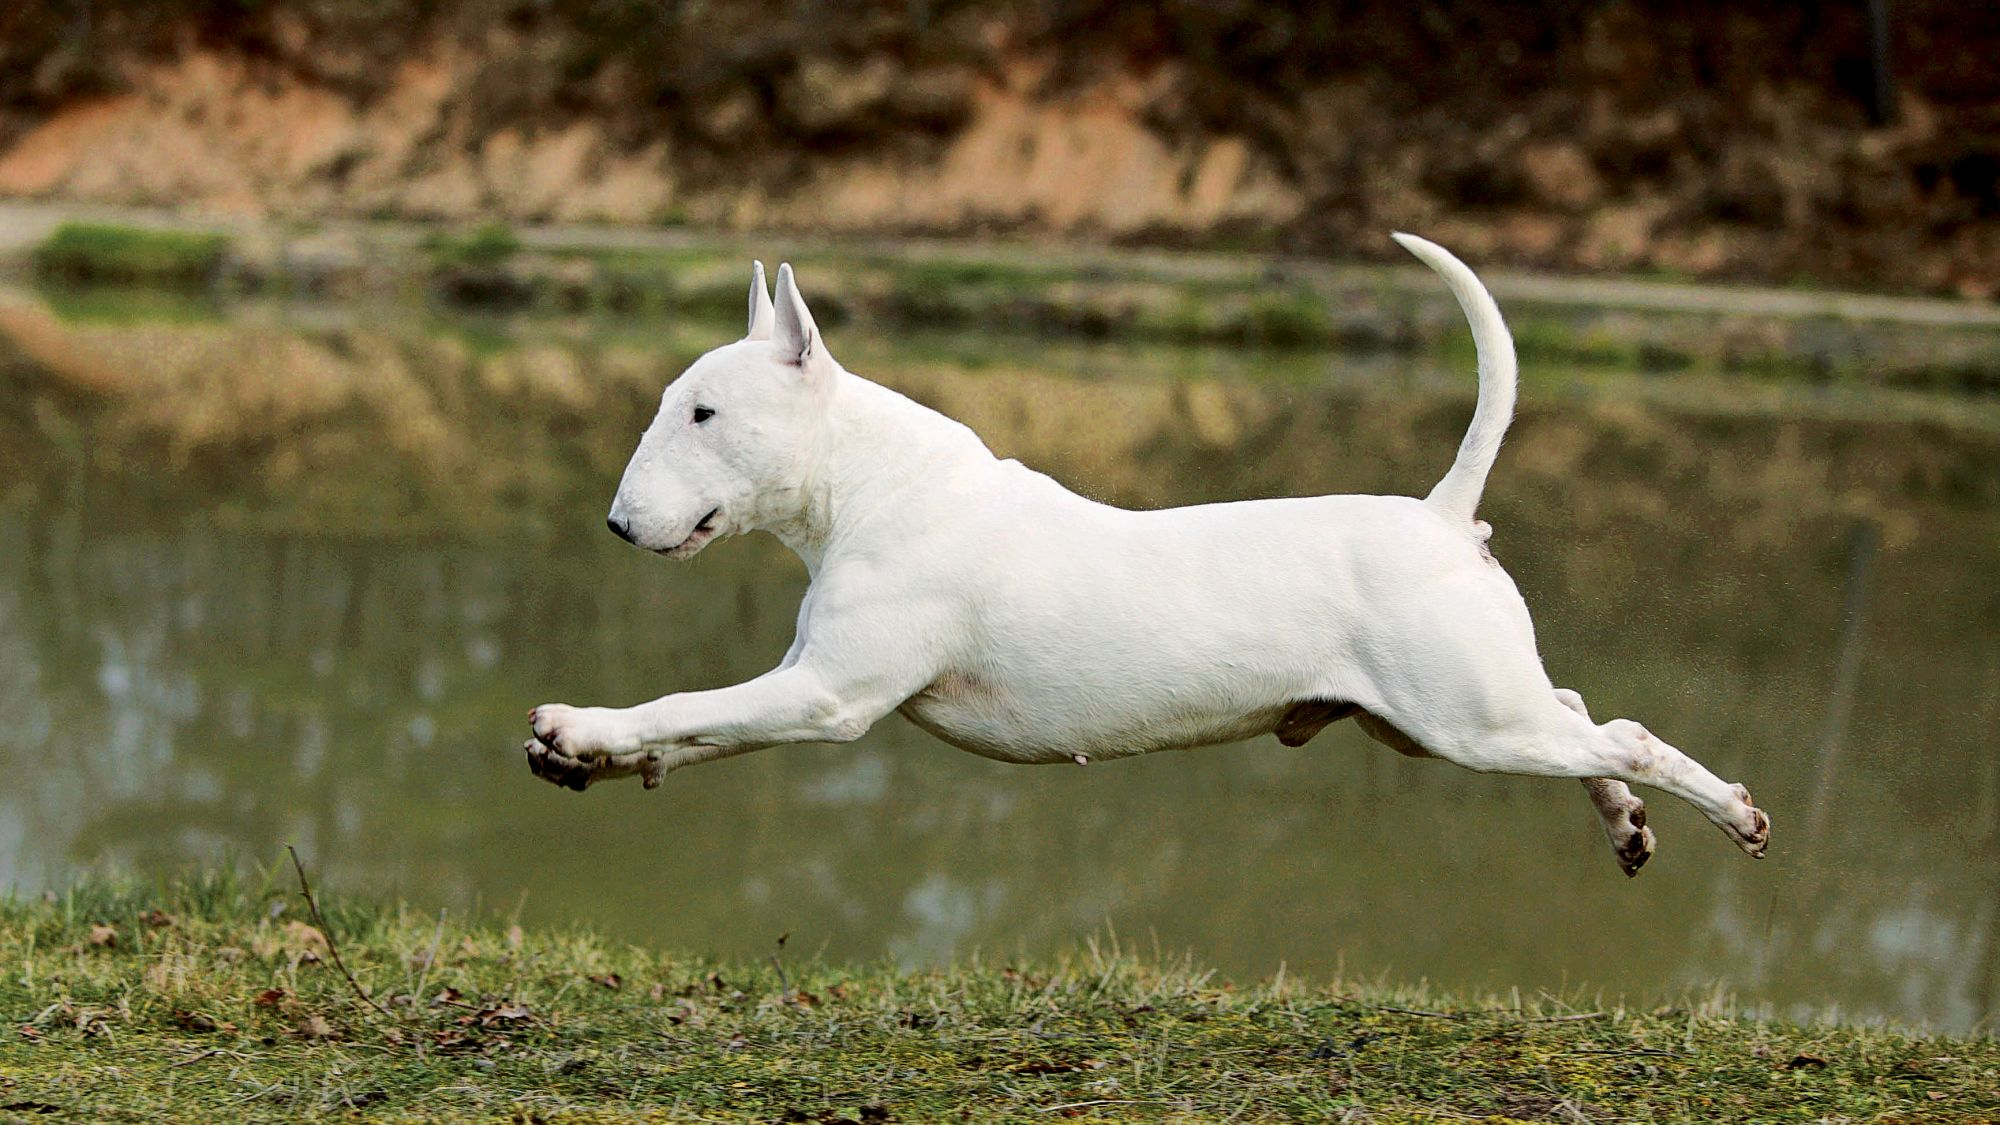 Bull Terrier caught on camera mid-jump